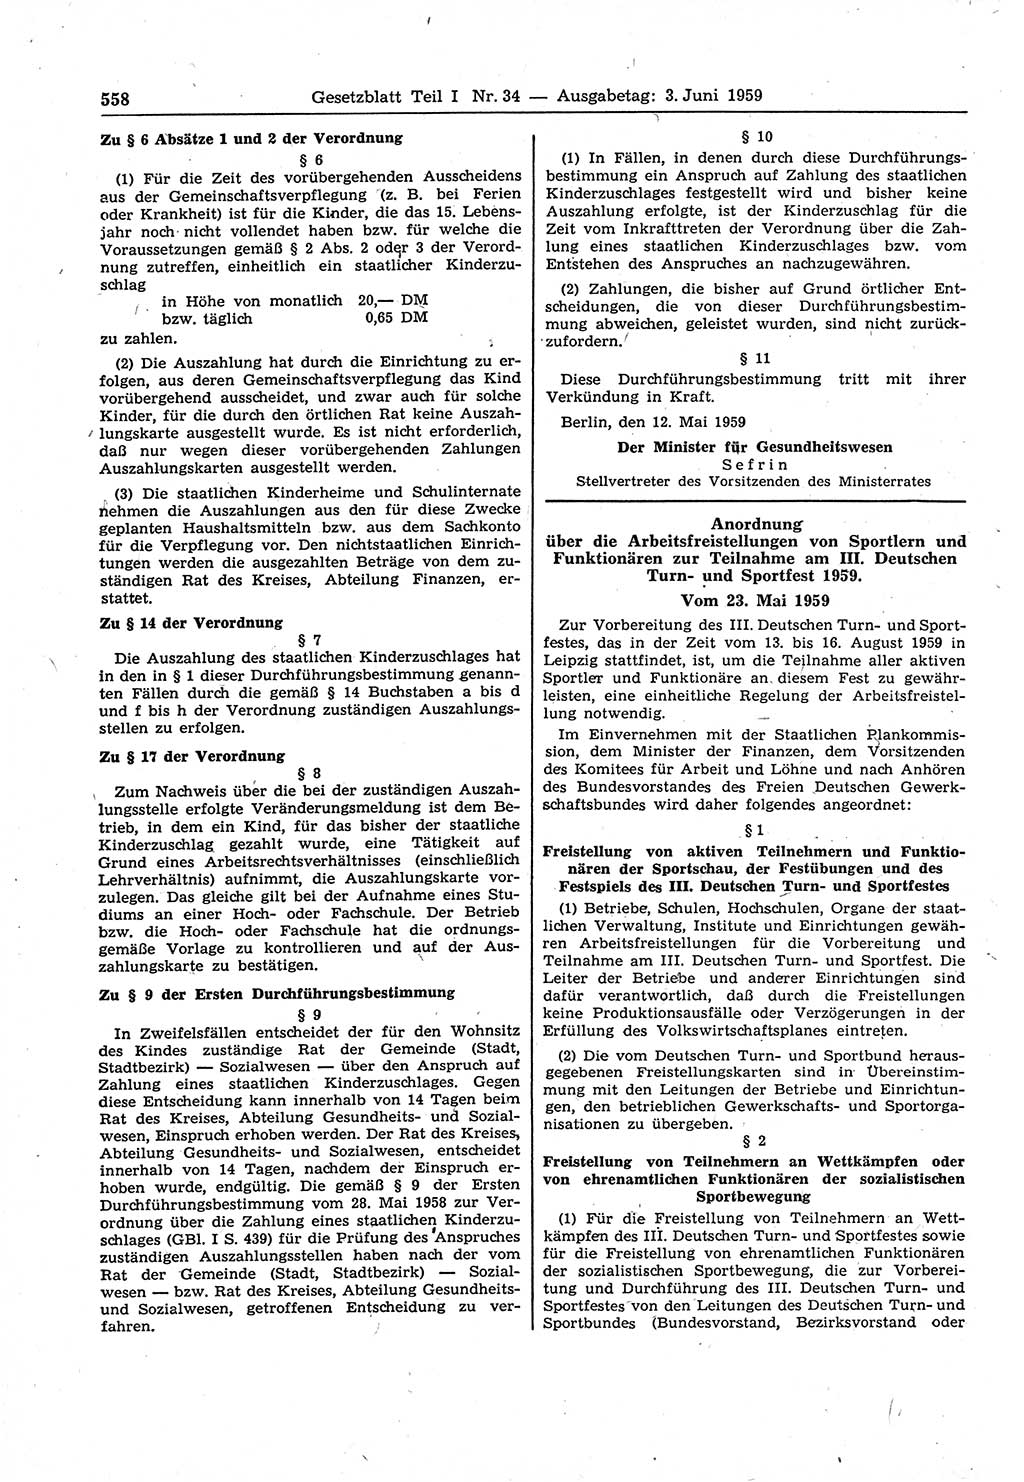 Gesetzblatt (GBl.) der Deutschen Demokratischen Republik (DDR) Teil Ⅰ 1959, Seite 558 (GBl. DDR Ⅰ 1959, S. 558)